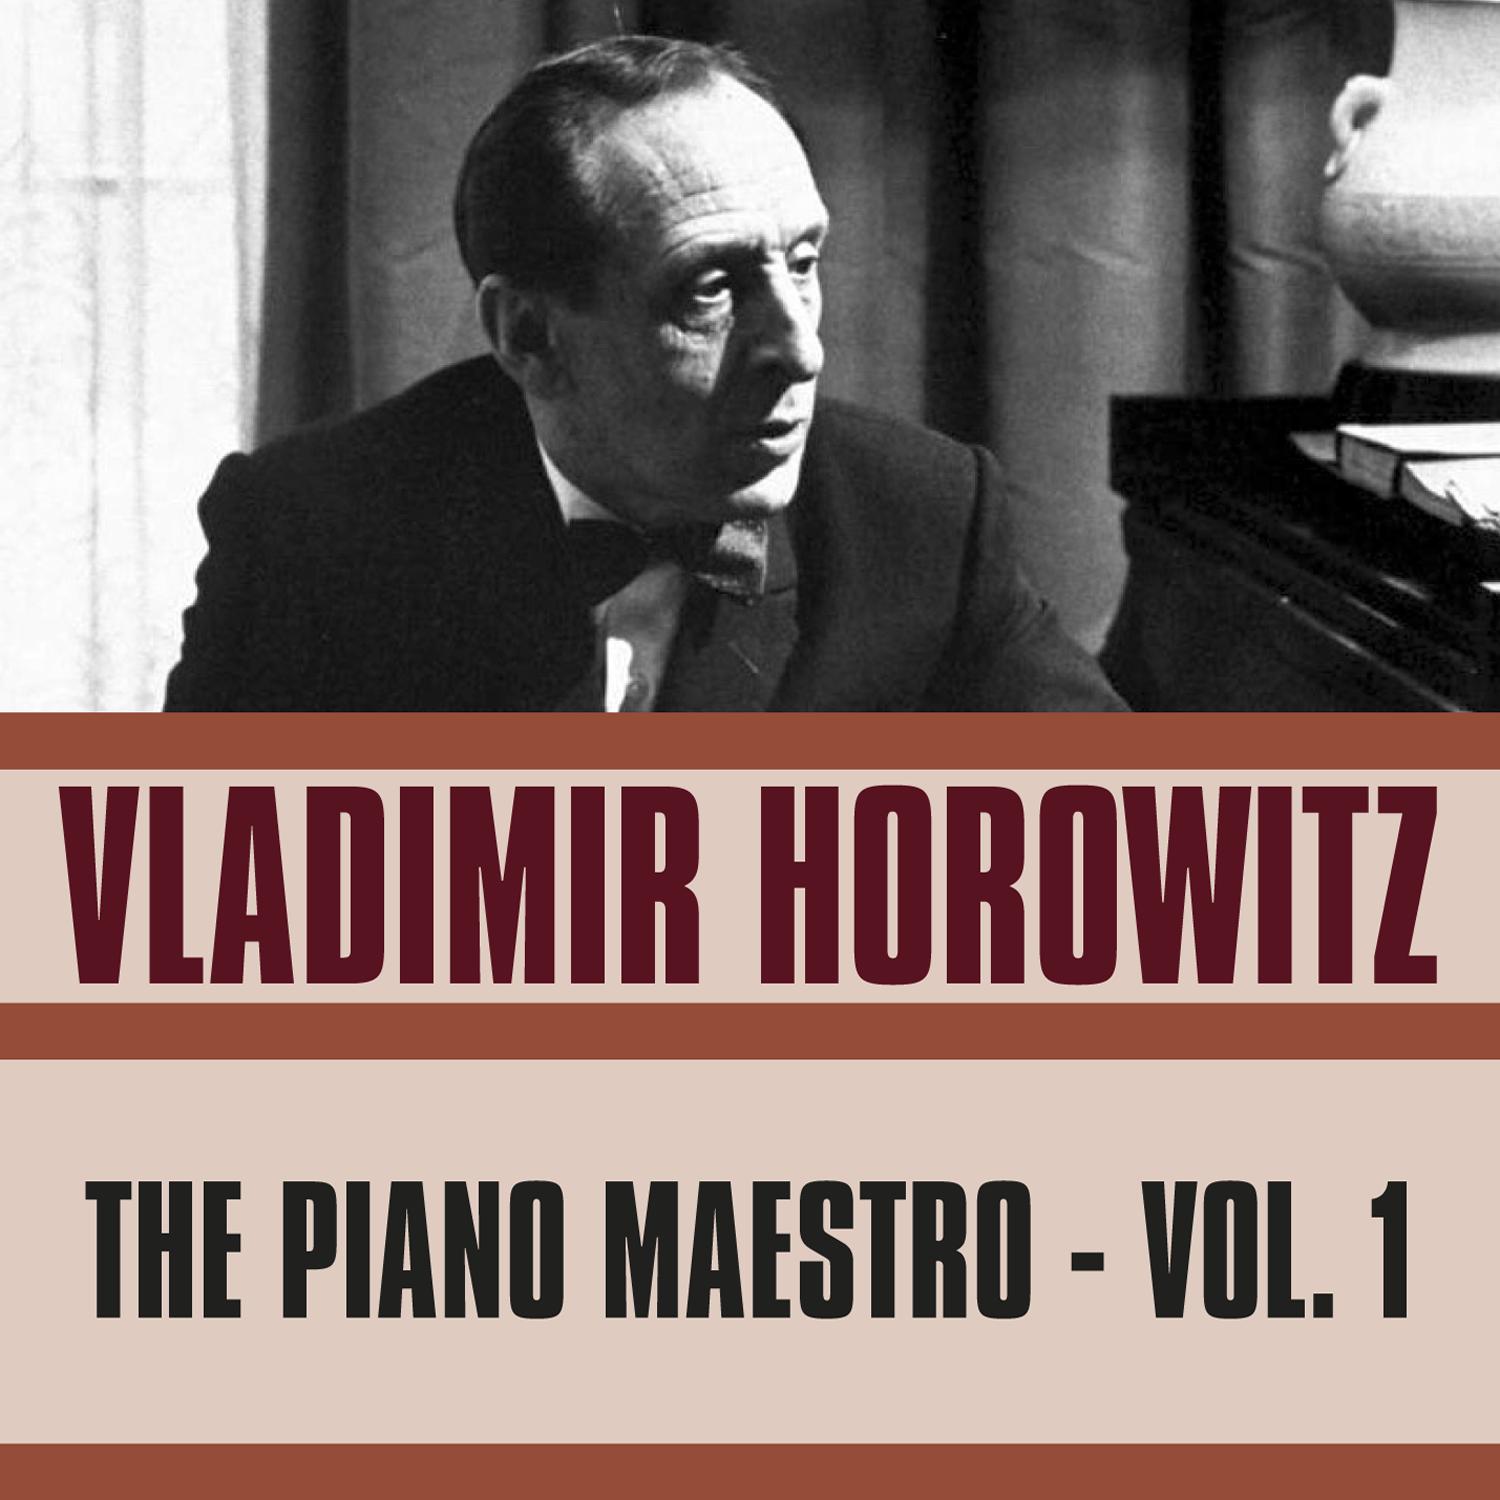 The Piano Maestro, Vol. 1